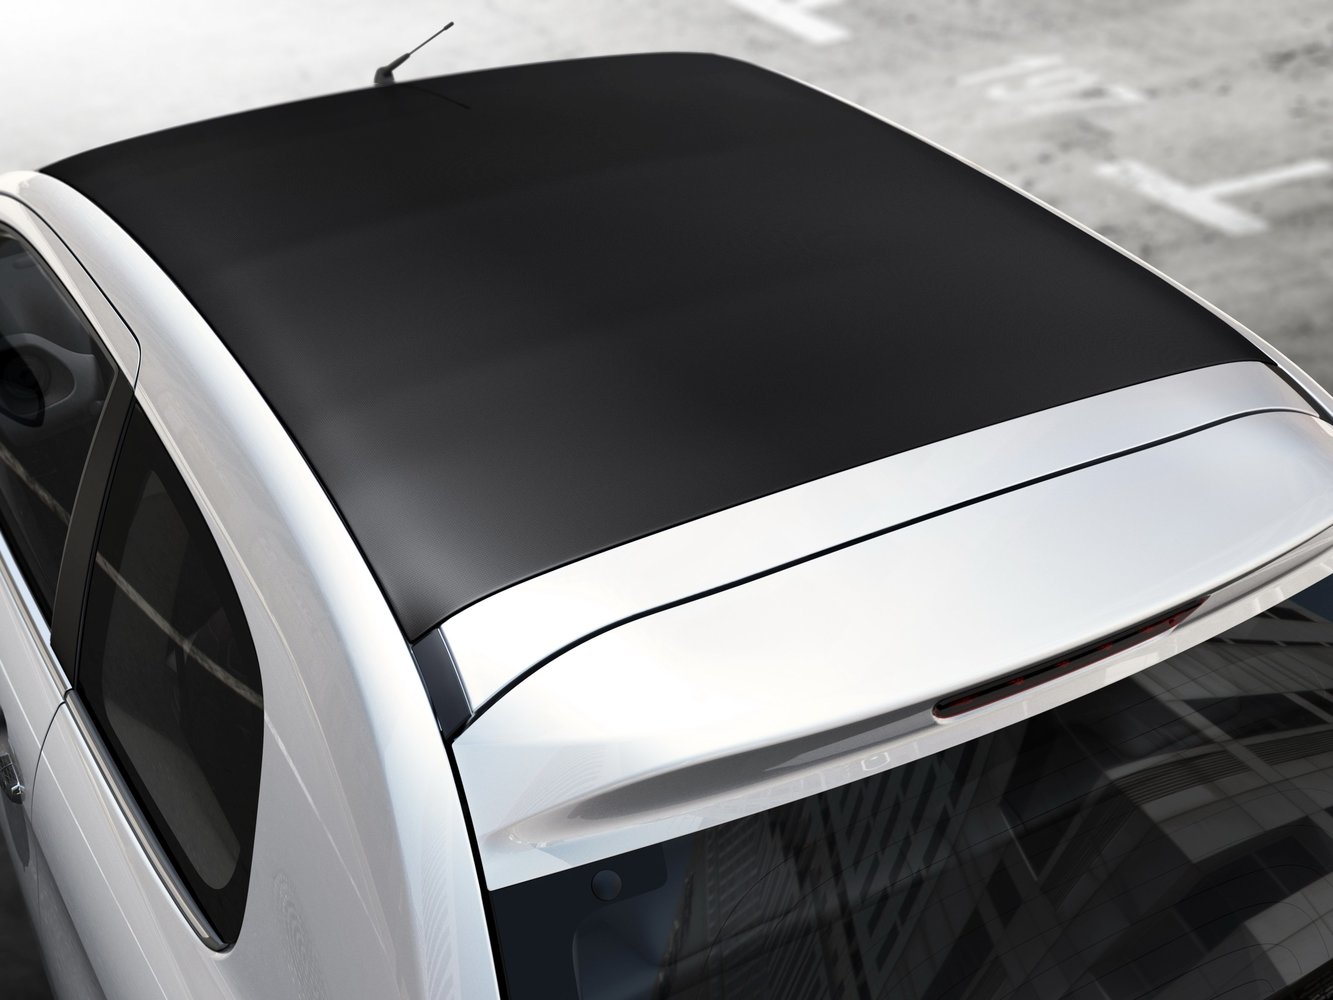 хэтчбек 3 дв. Peugeot 108 2014 - 2016г выпуска модификация 1.0 AMT (69 л.с.)